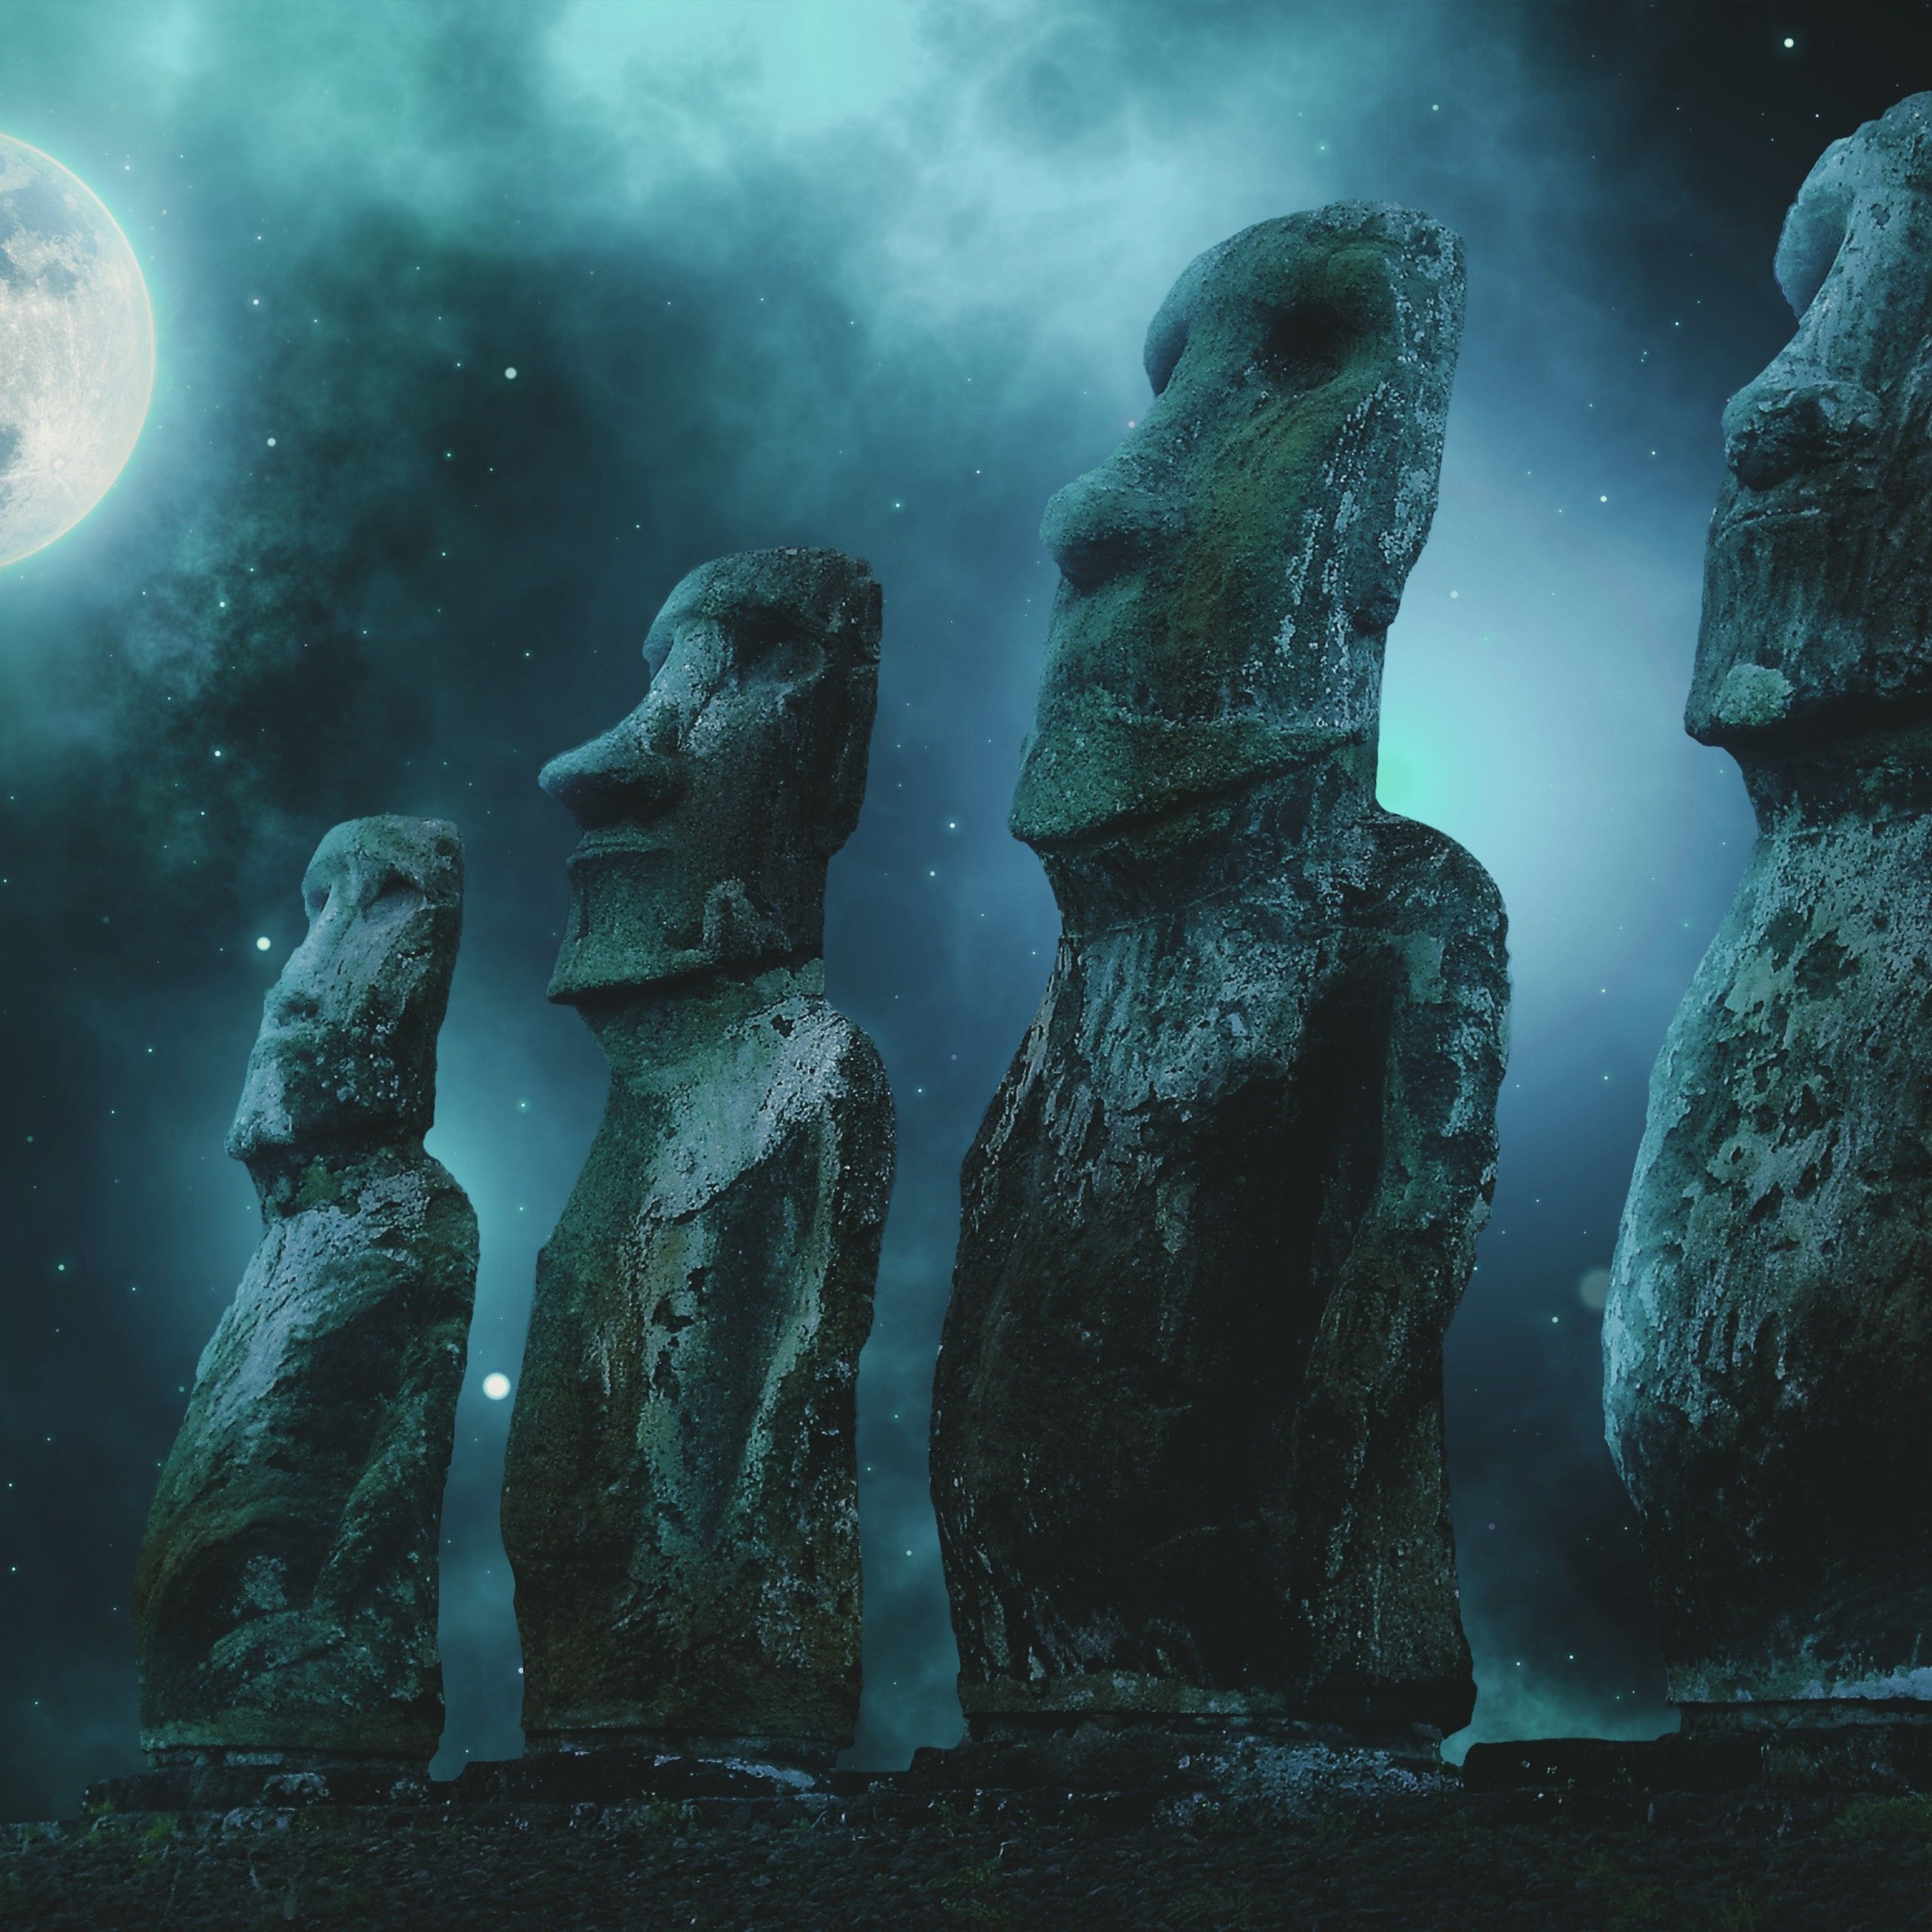 Moai statues 4K Wallpaper, Easter Island, Full moon, Stars, Night sky, 5K, 8K, World